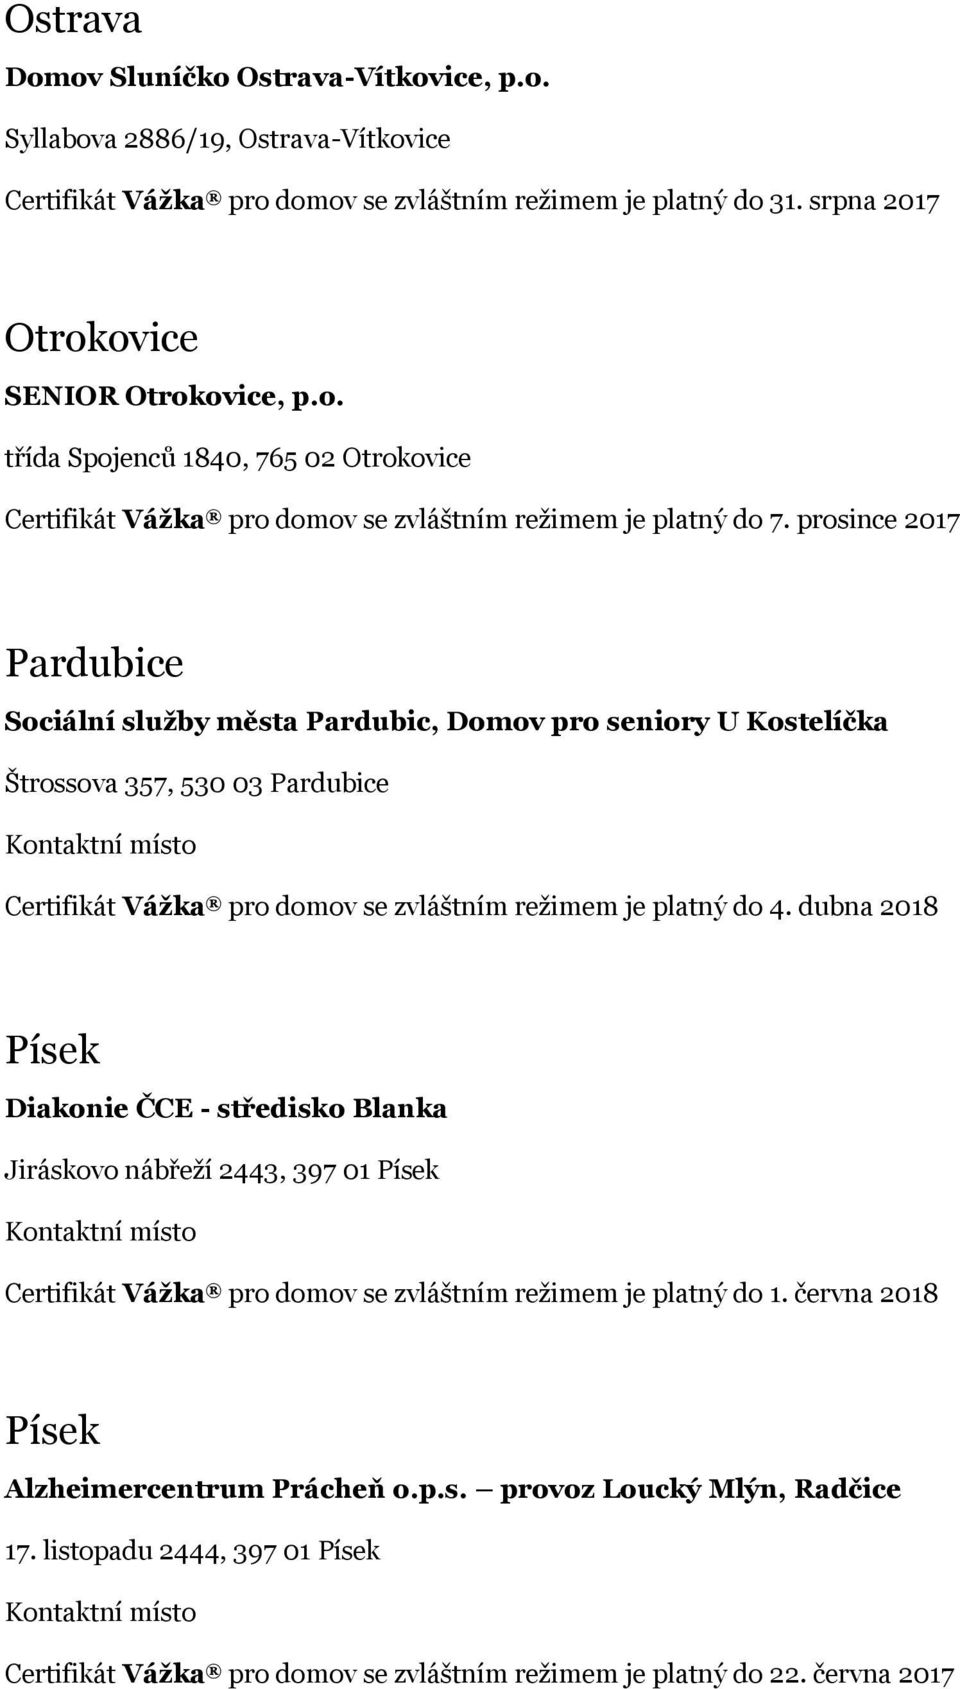 dubna 2018 Písek Diakonie ČCE - středisko Blanka Jiráskovo nábřeží 2443, 397 01 Písek Certifikát Vážka pro domov se zvláštním režimem je platný do 1. června 2018 Písek Alzheimercentrum Prácheň o.p.s. provoz Loucký Mlýn, Radčice 17.